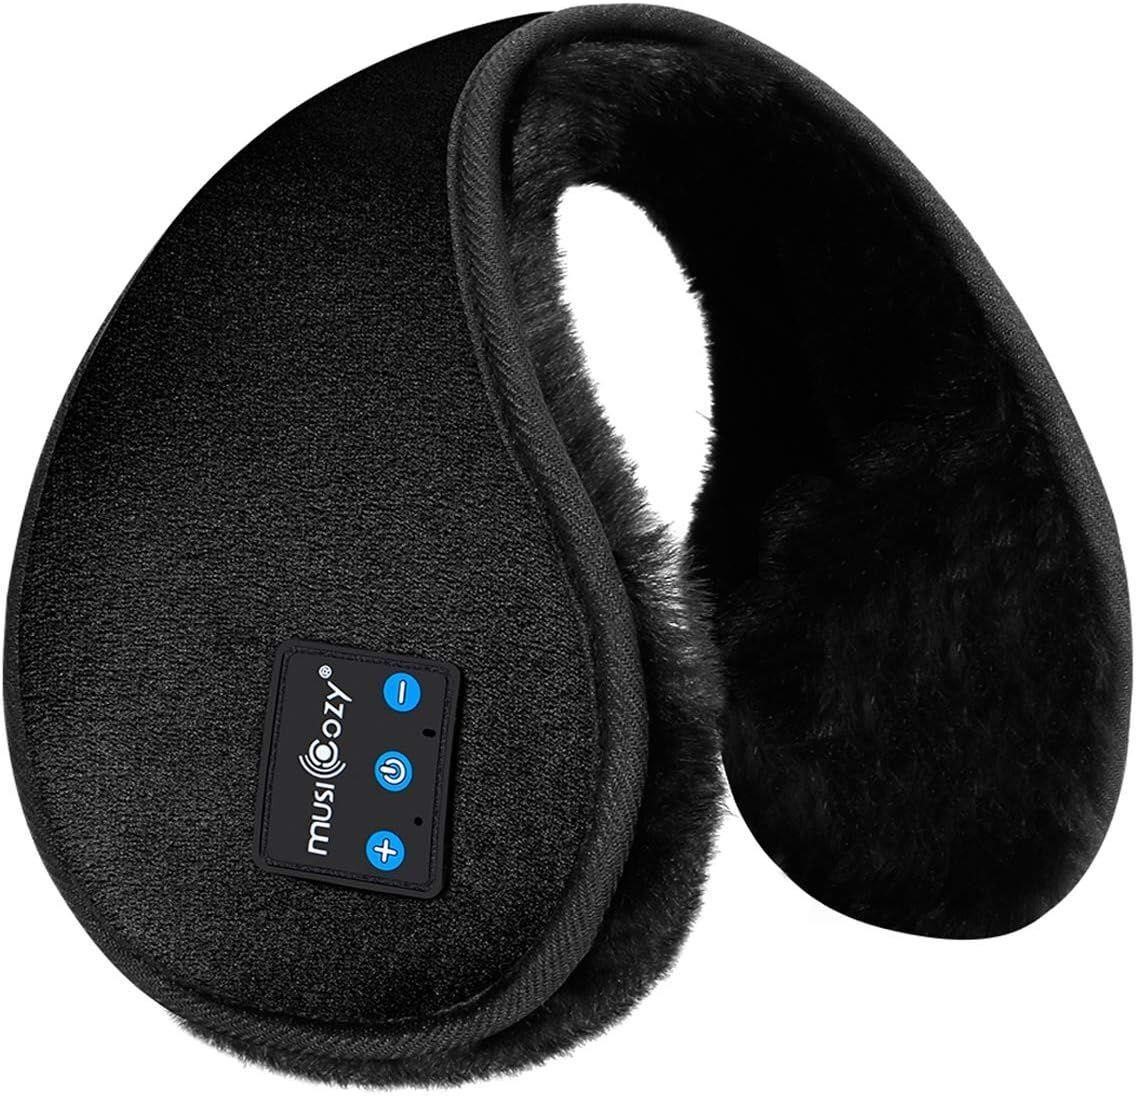 Bluetooth Ear Muffs for Winter